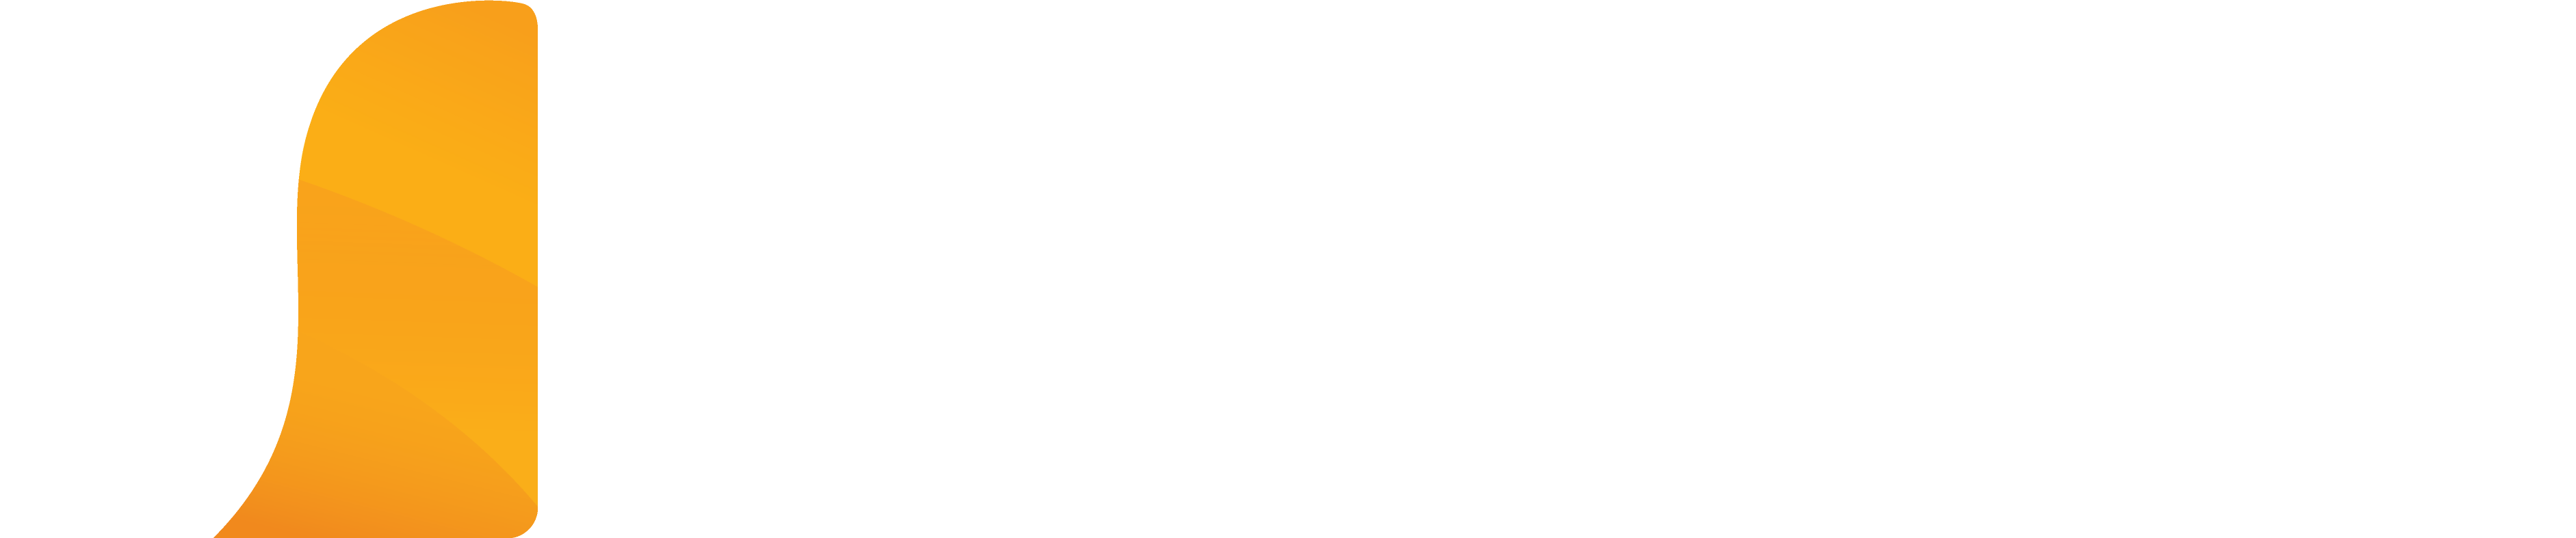 Unecos logo